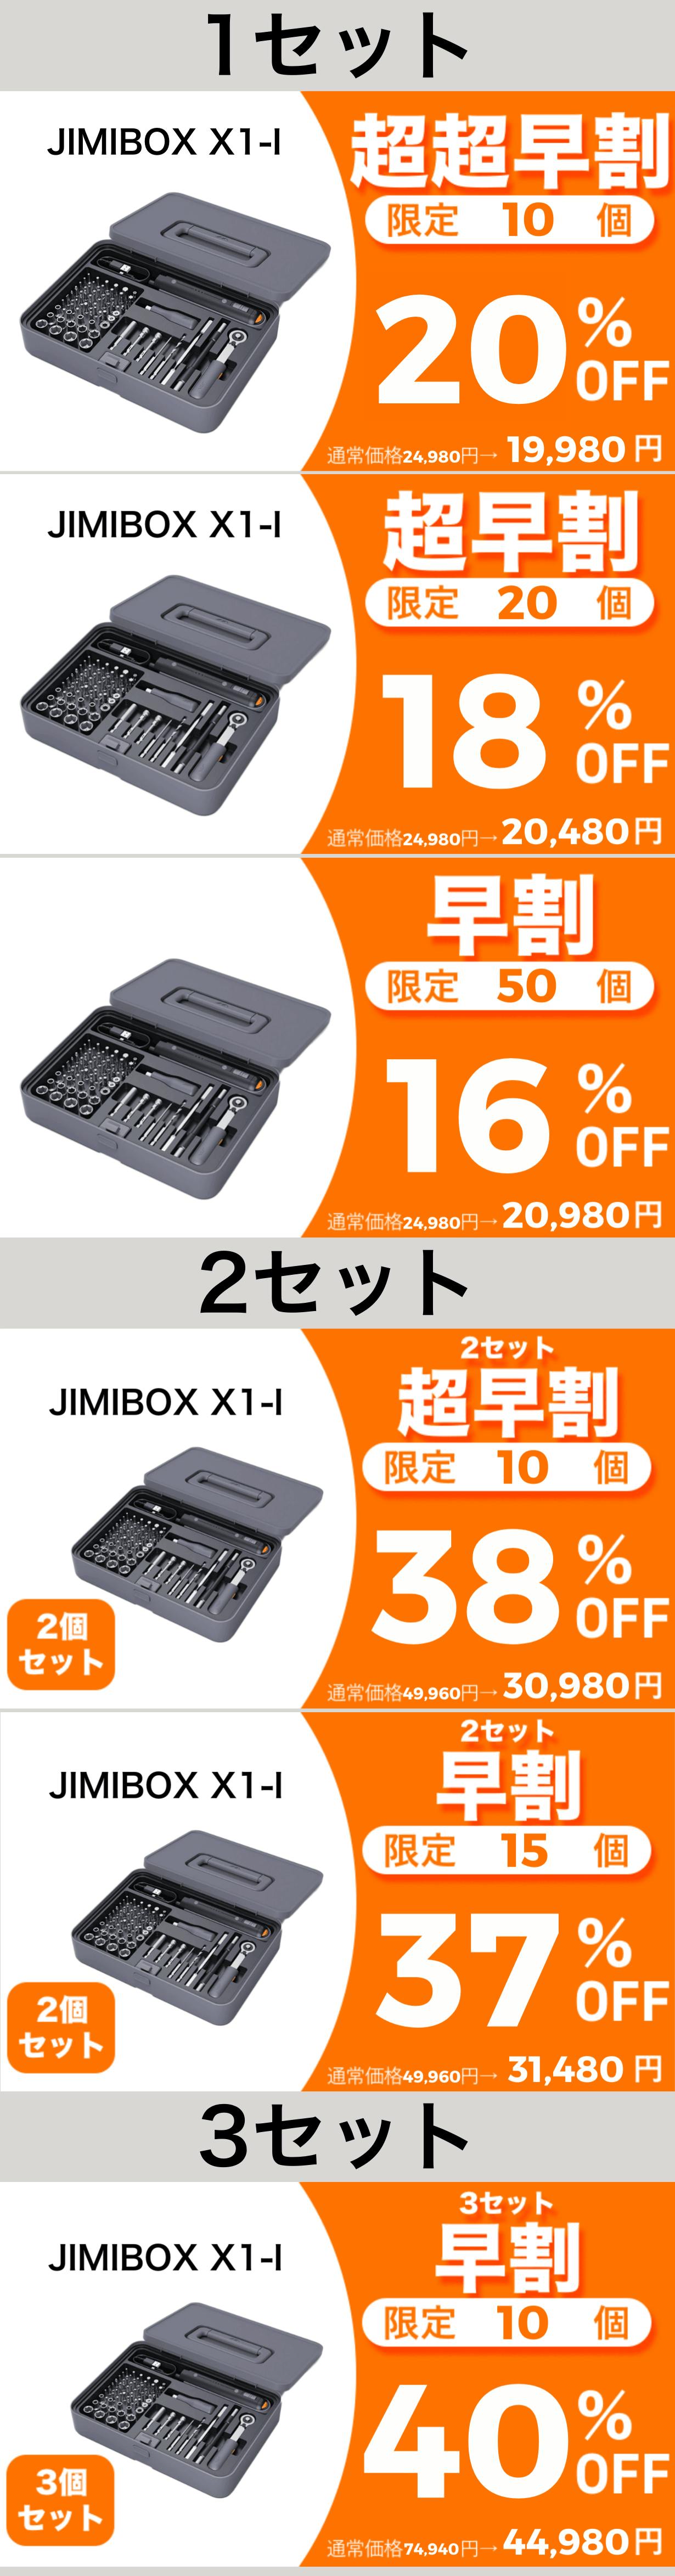 ドライバー/ドリル/ラチェットの3in1多機能セット【JIMIBOX X1-I】 CAMPFIRE (キャンプファイヤー)